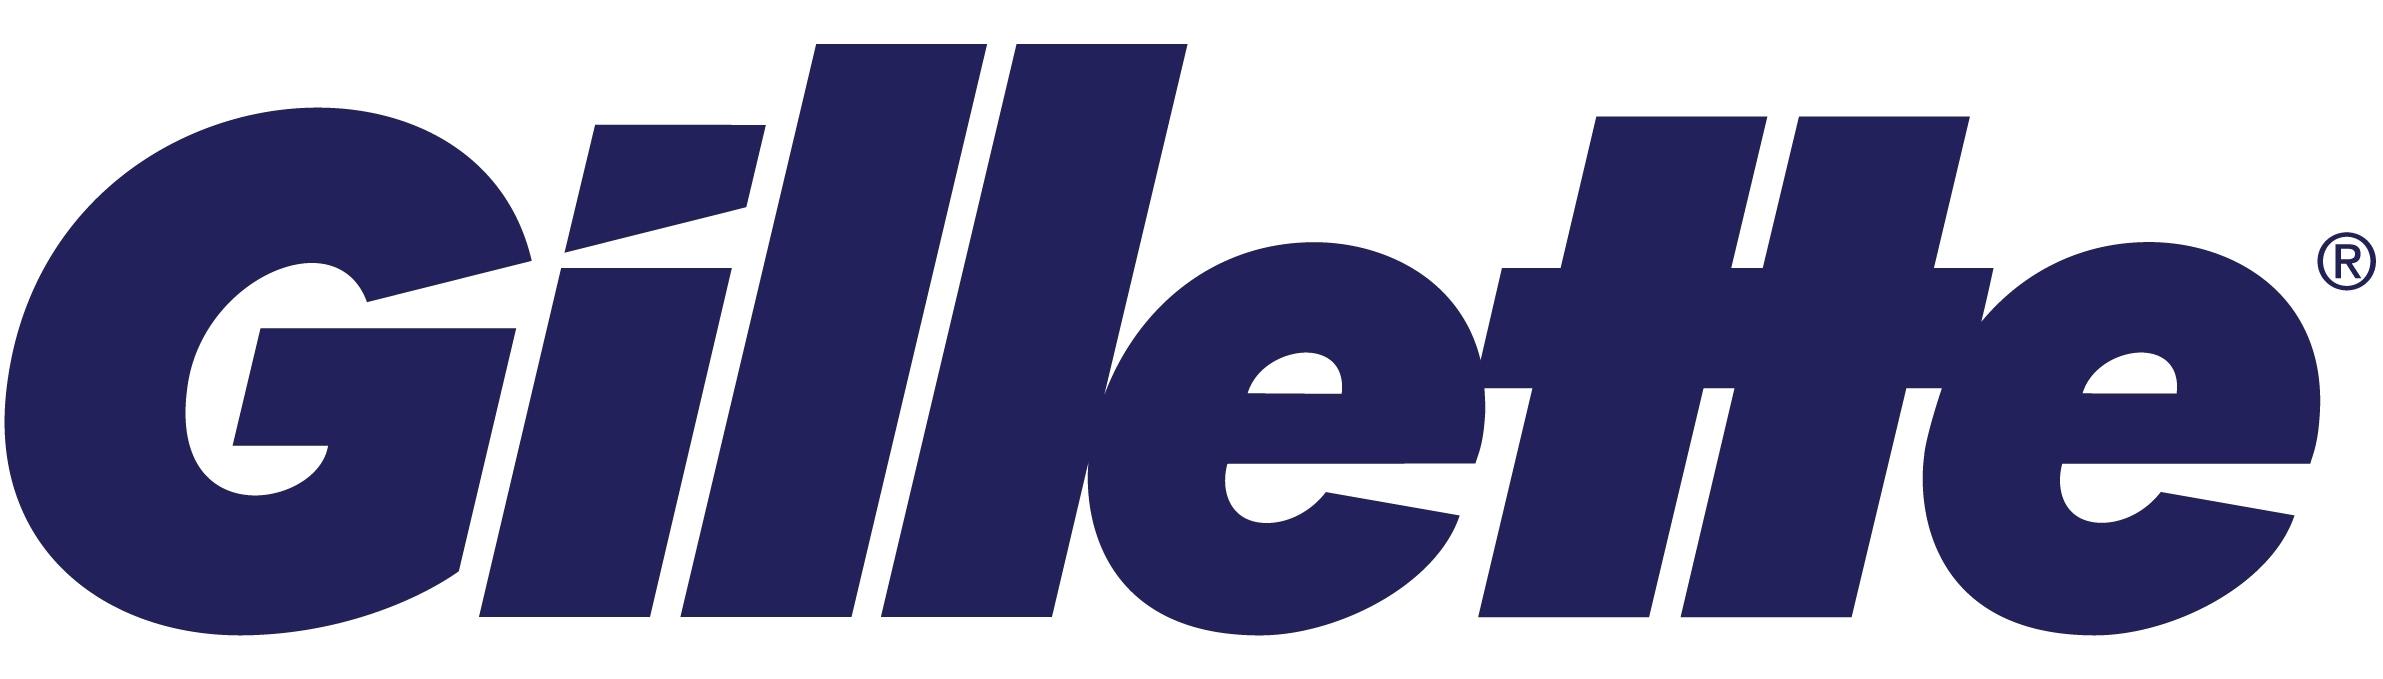 Gillette UK logo